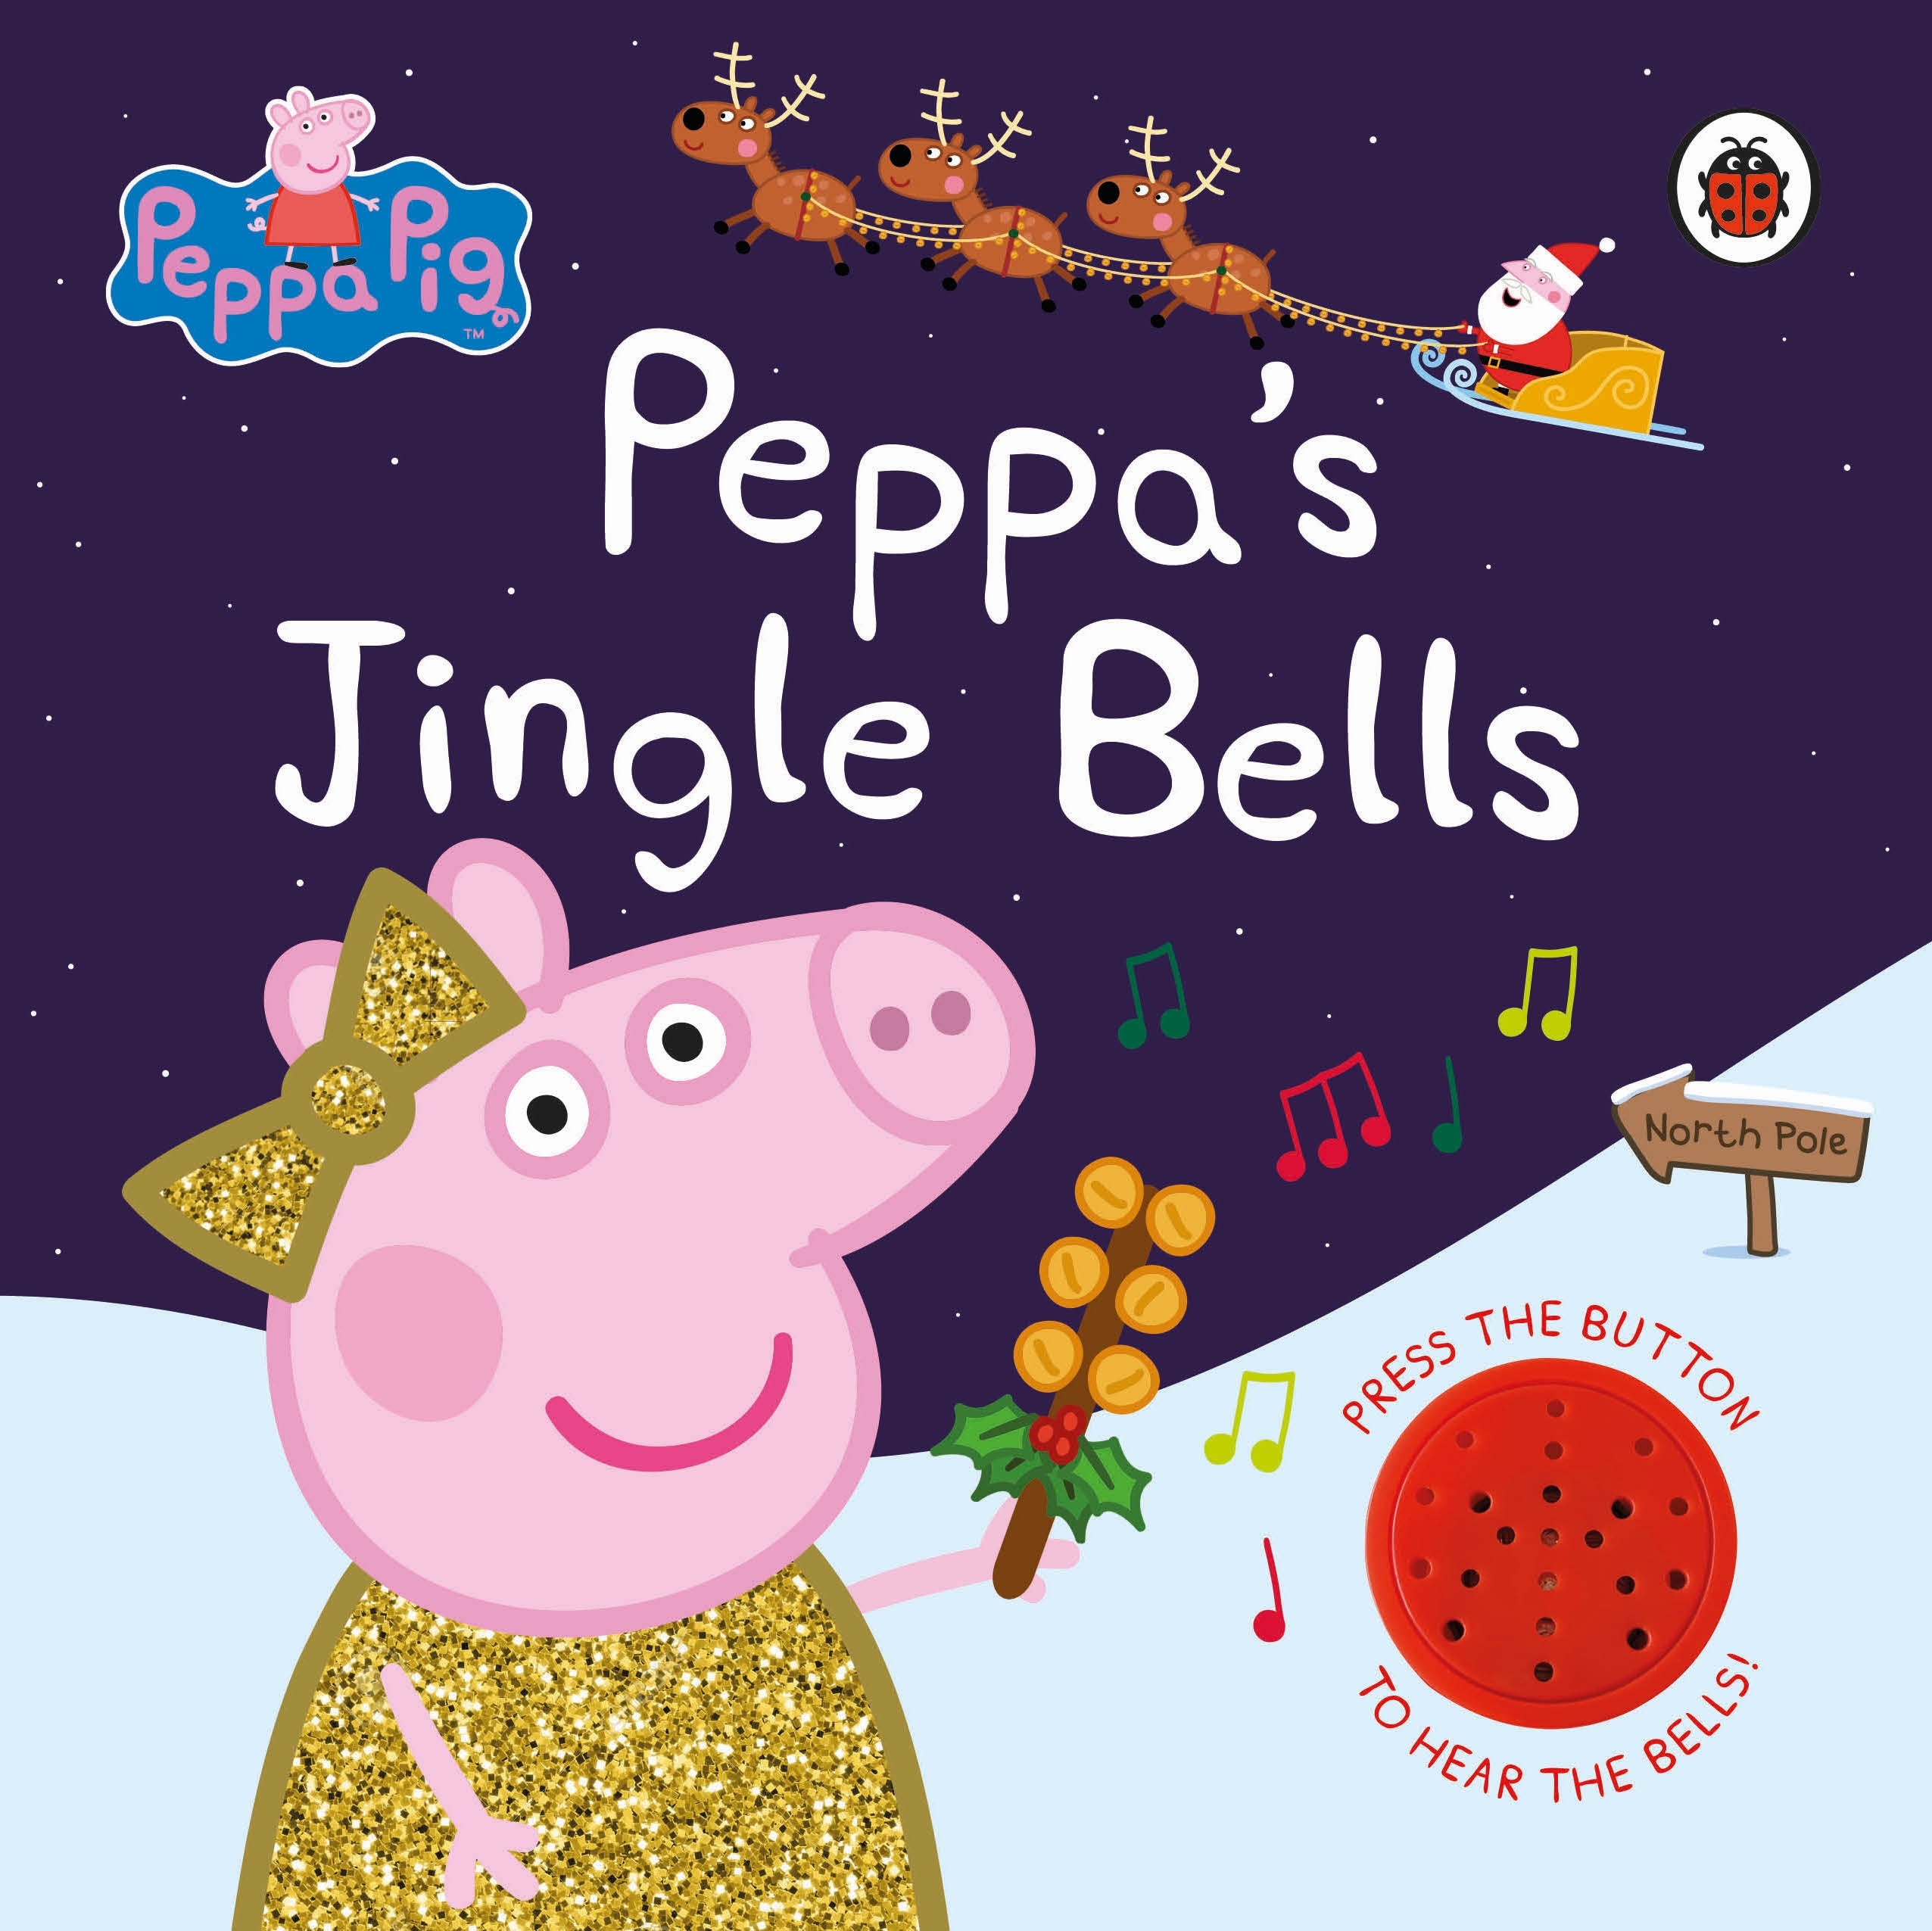 Book “Peppa Pig: Peppa's Jingle Bells” by Peppa Pig — September 30, 2021